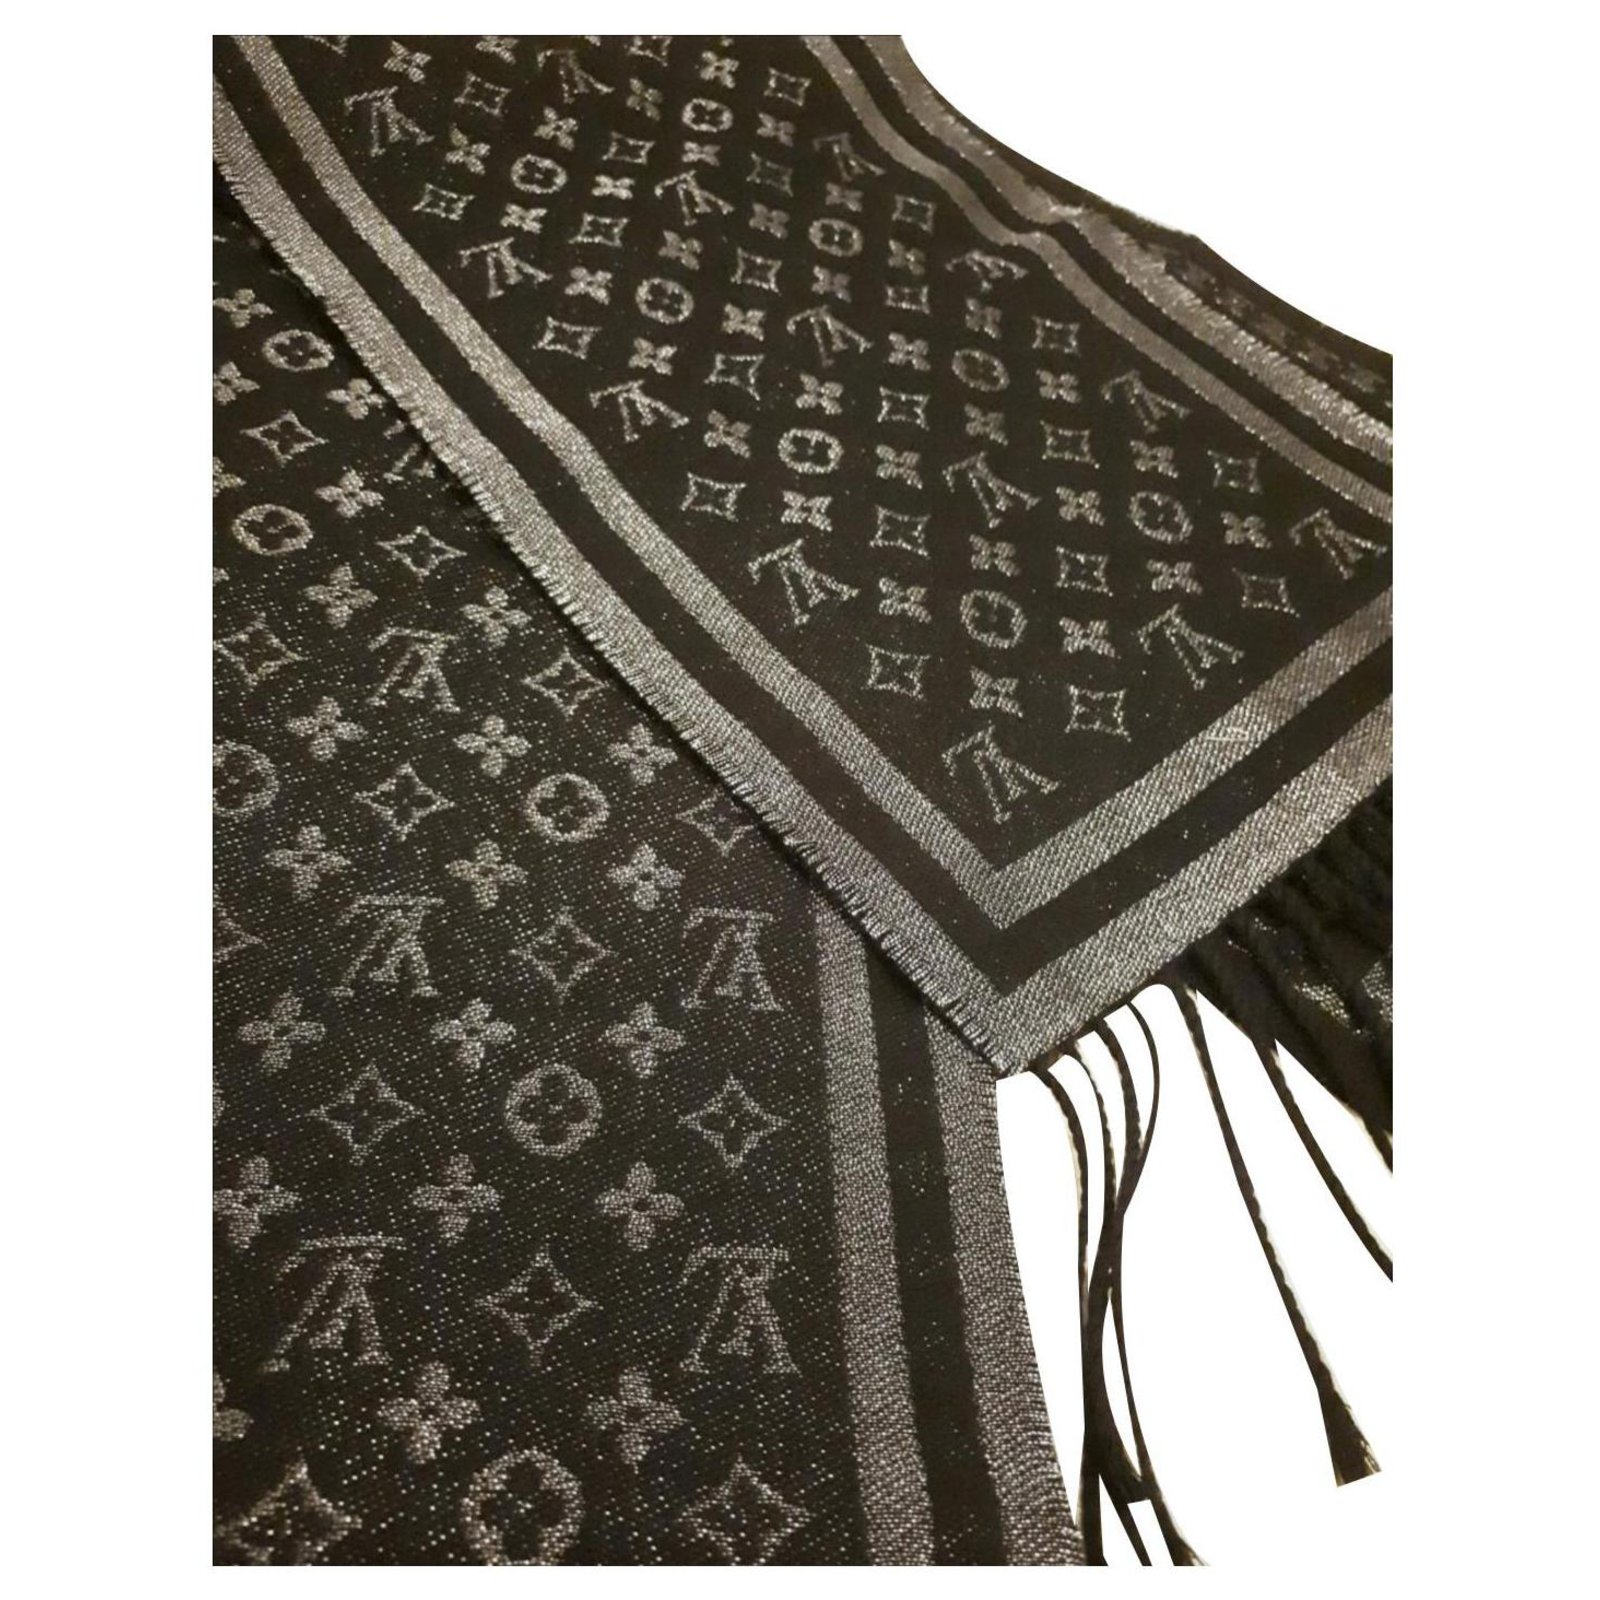 Louis Vuitton Schal in schwarz/silber